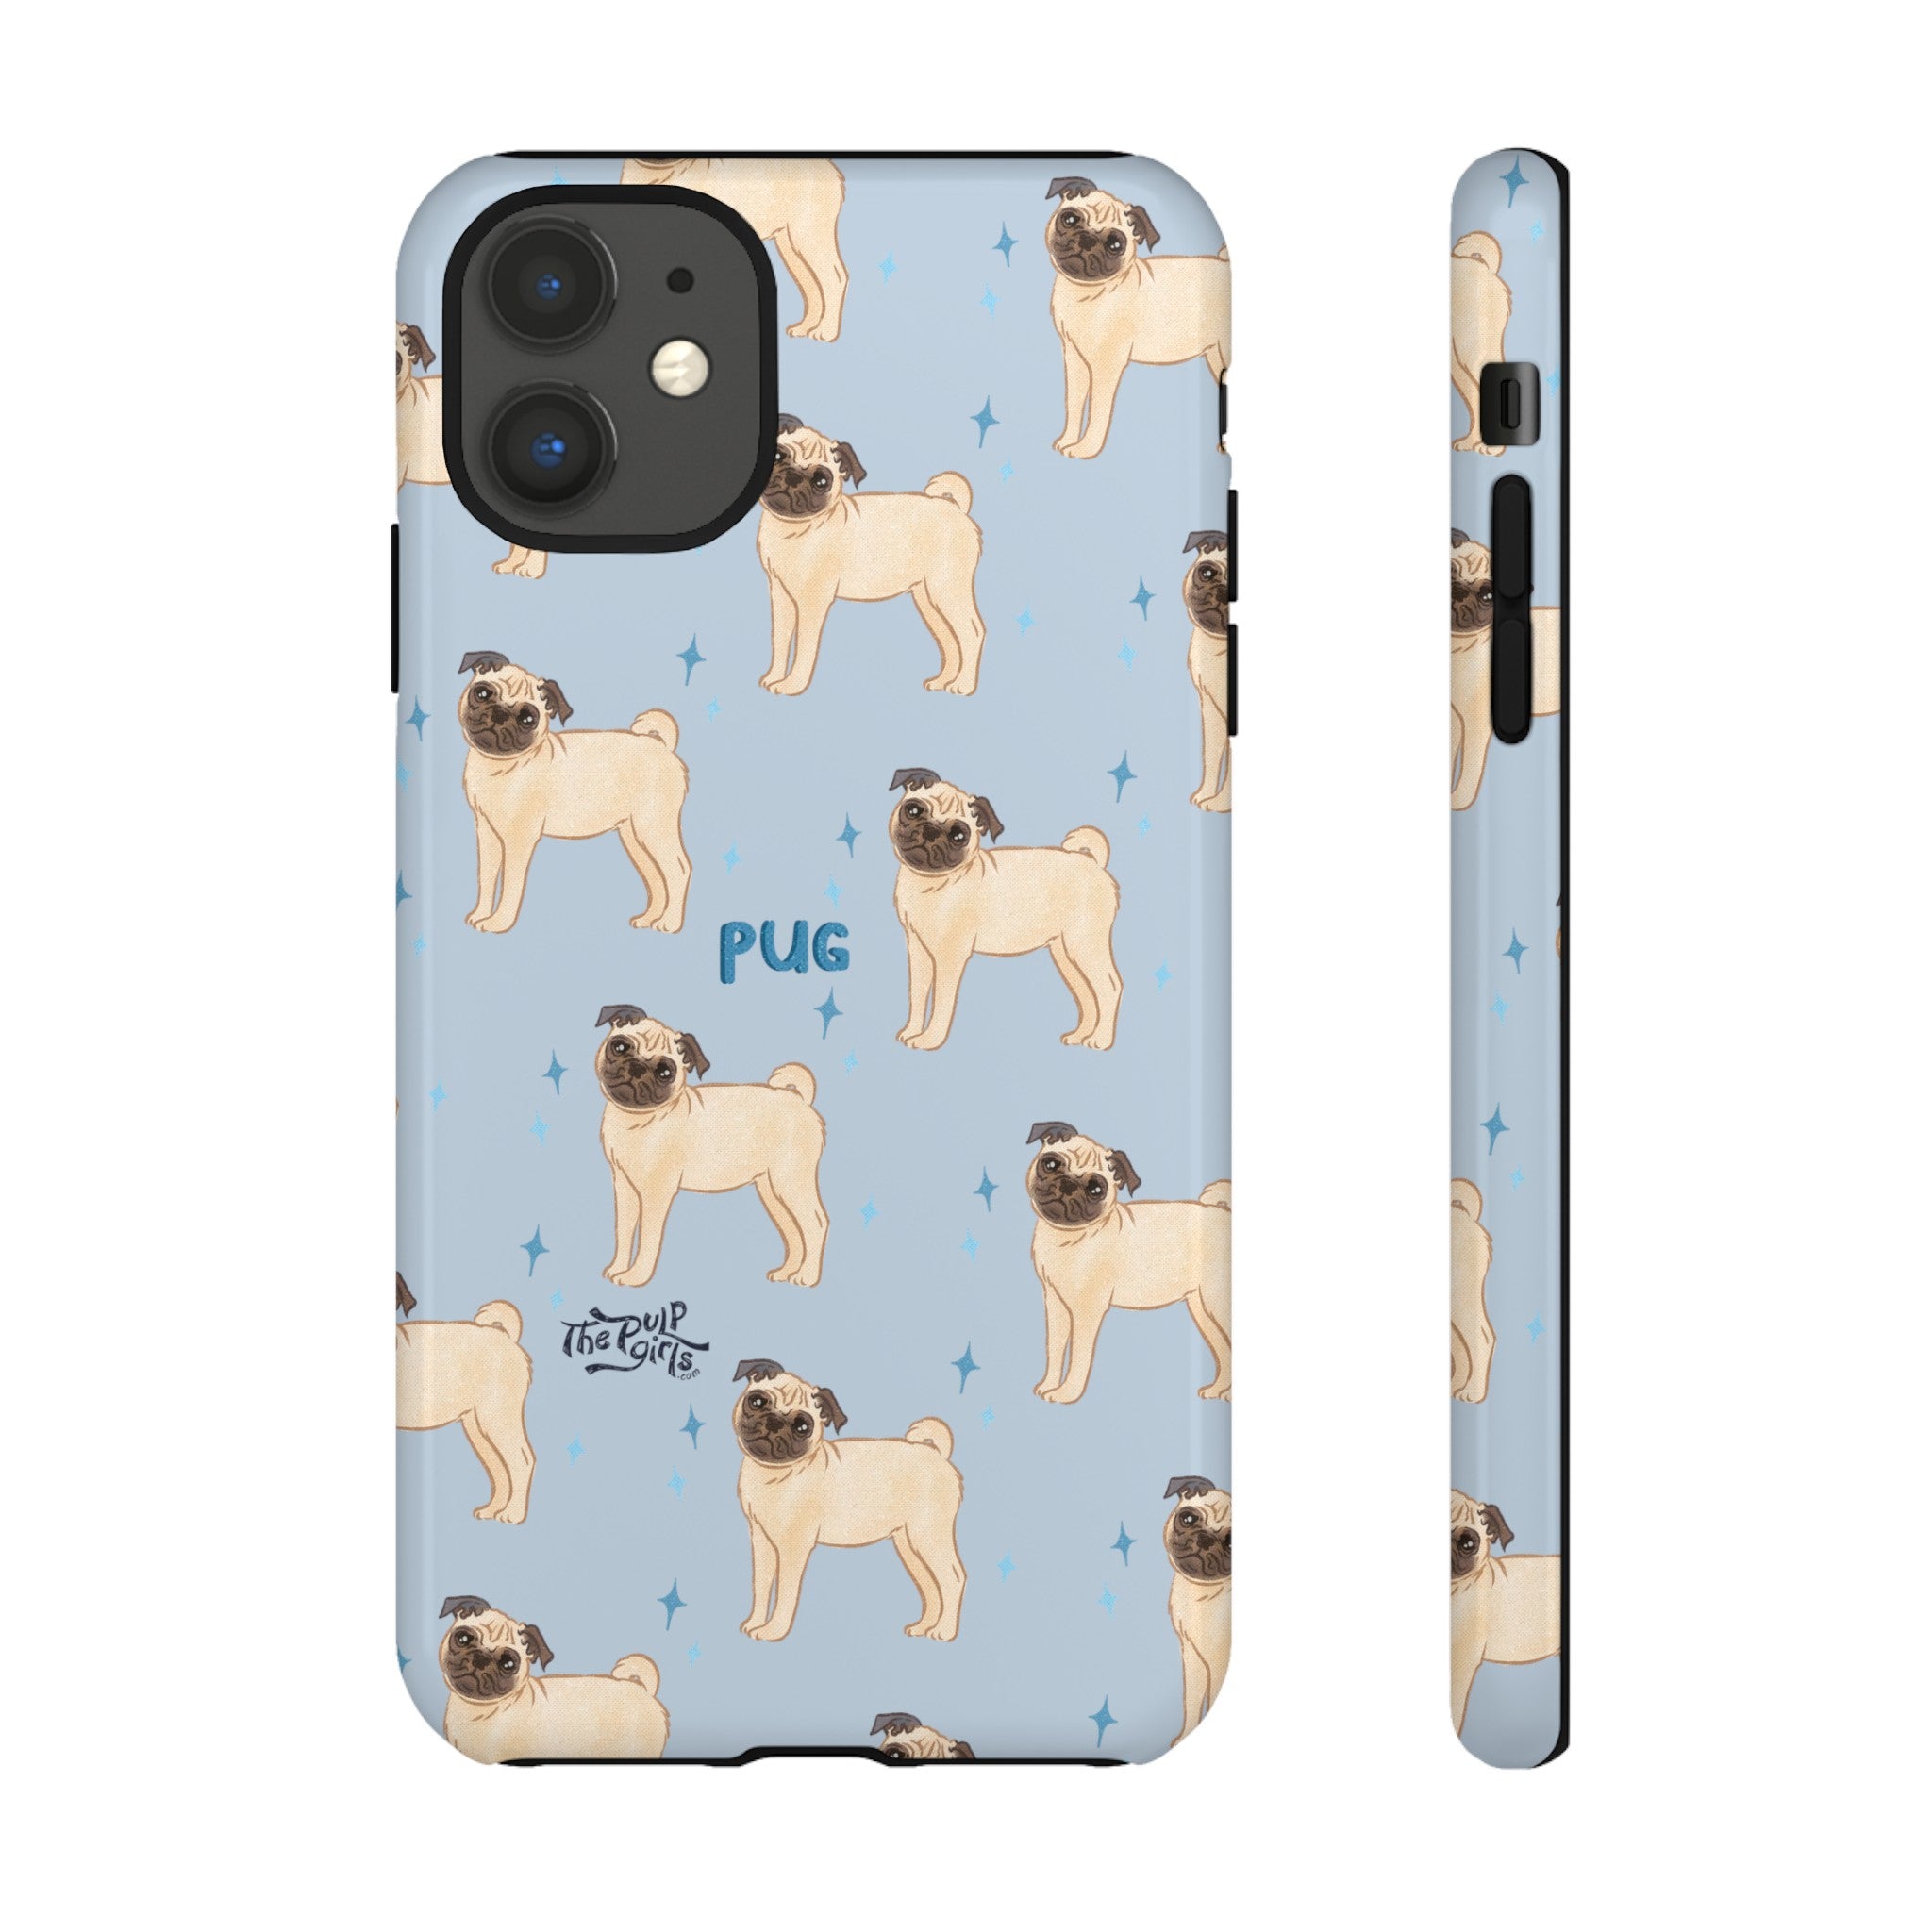 Pug Dog Phone Case